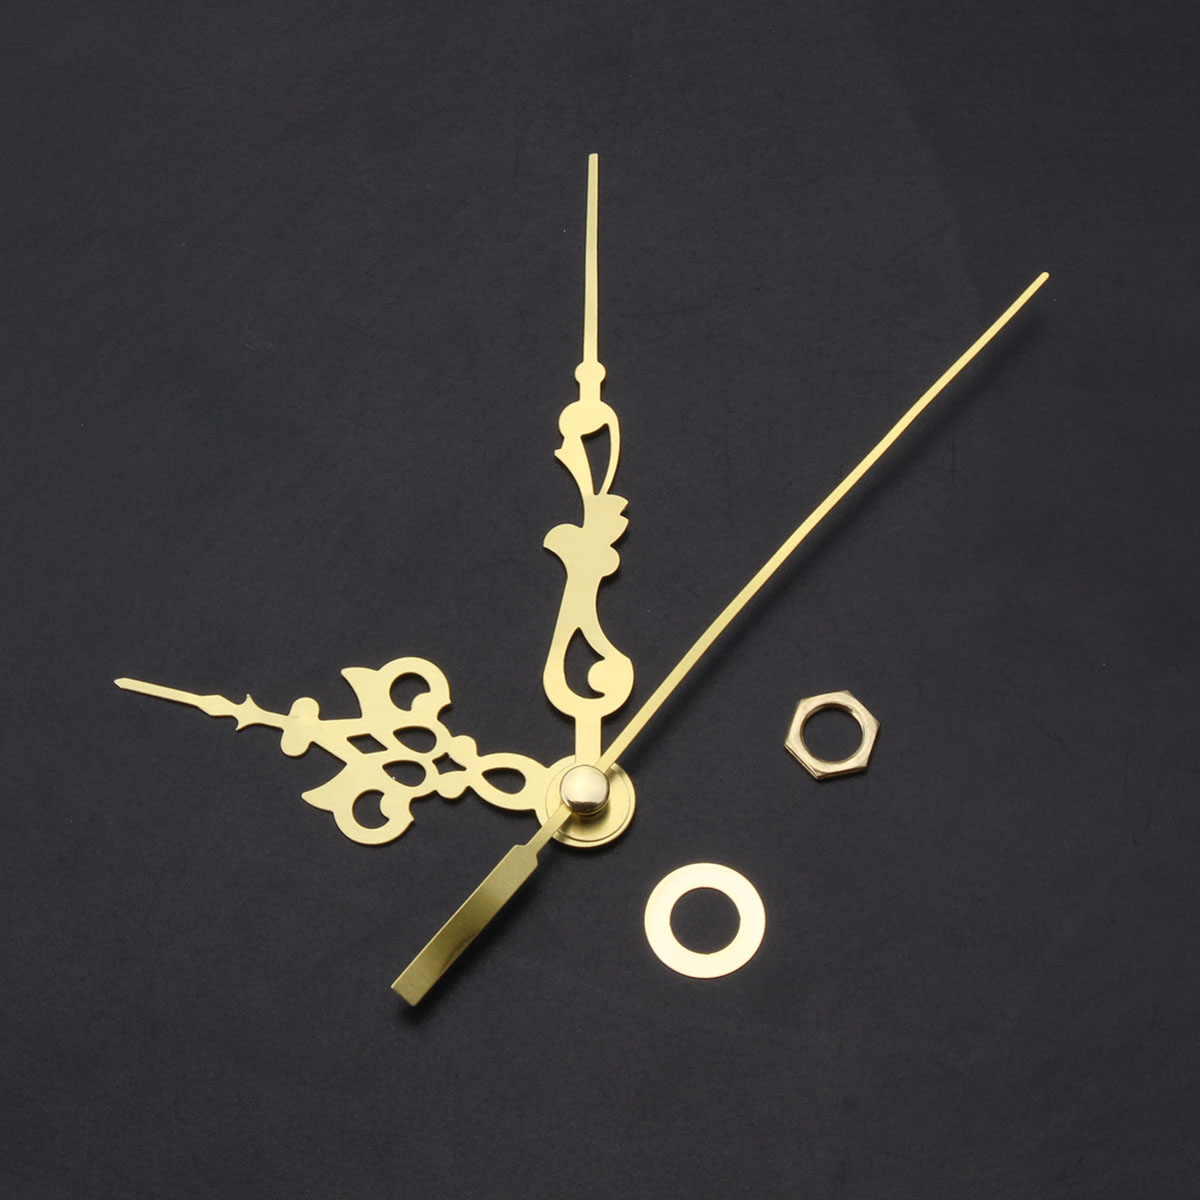 DIY-Replacement-Quartz-Clock-Movement-Hands-Mute-Mechanism-Repair-Kit-1288008